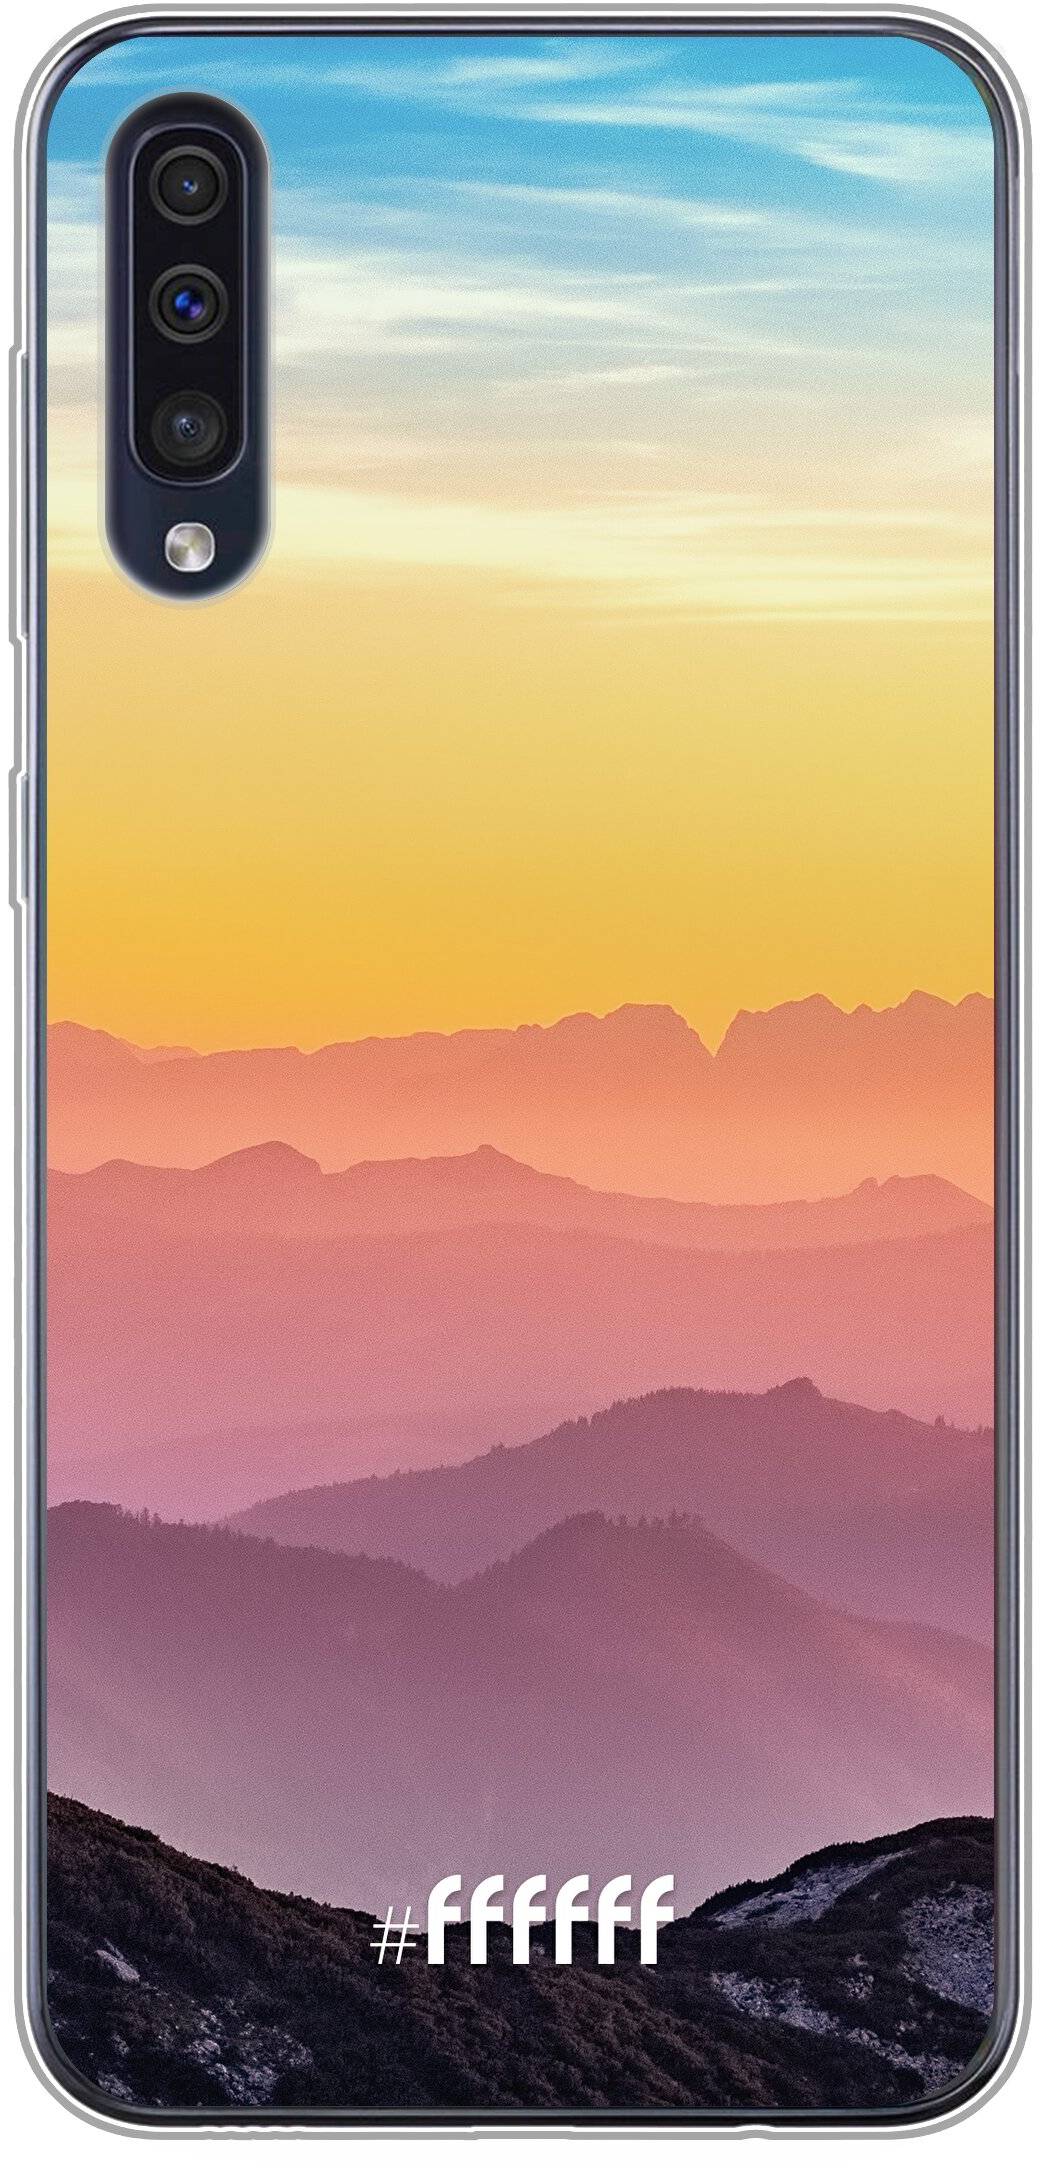 Golden Hour Galaxy A50s